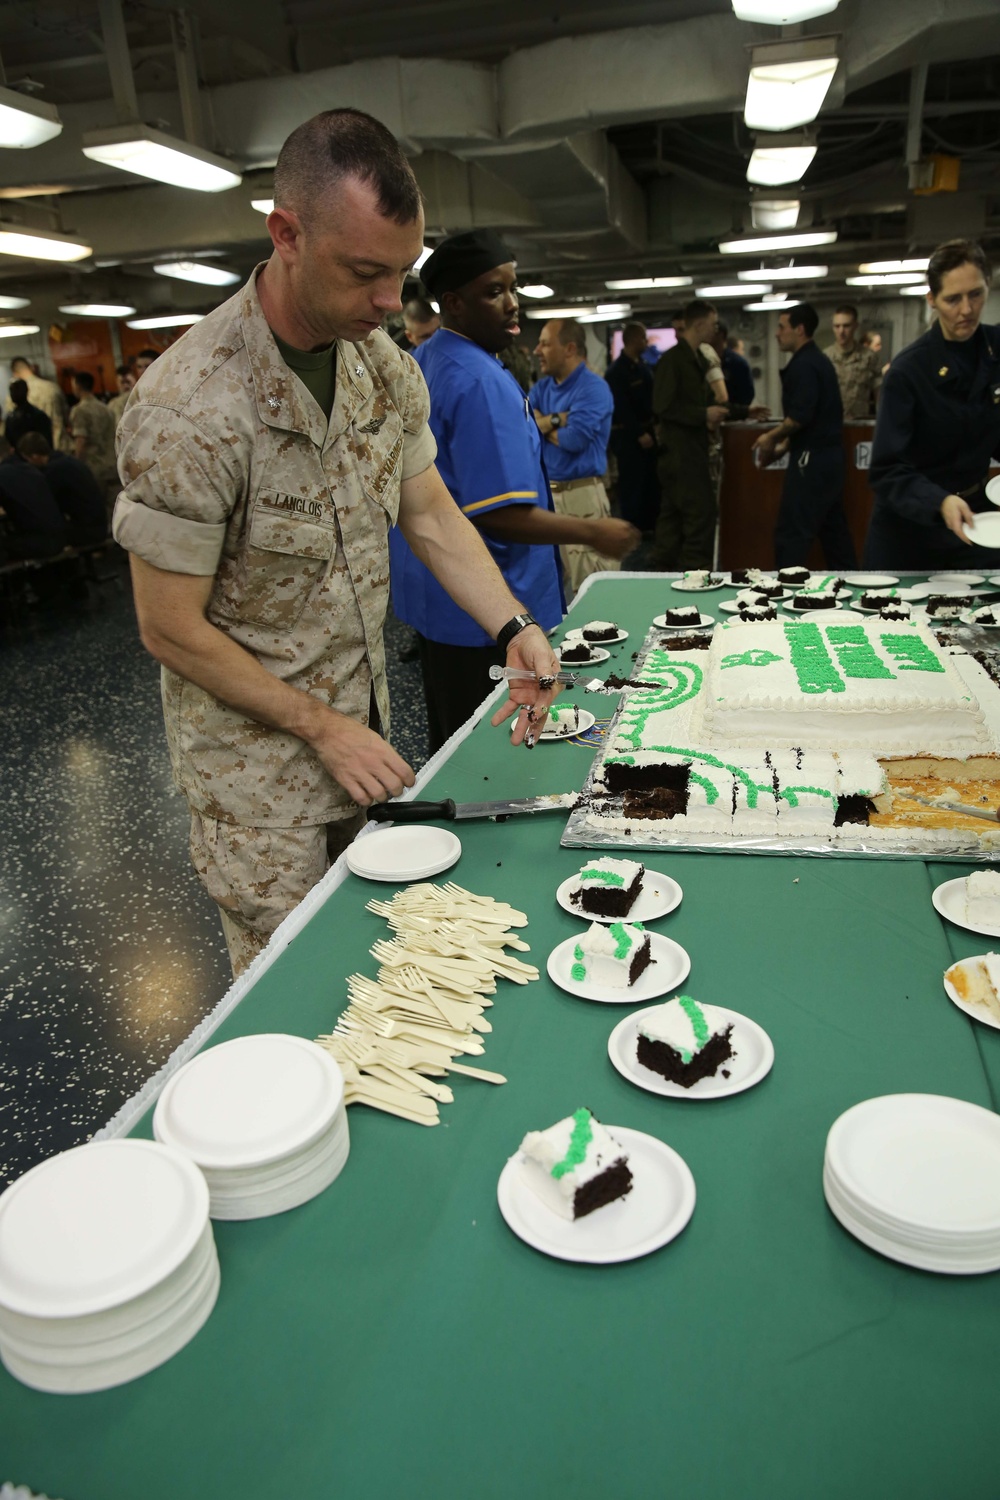 22nd MEU, USS Bataan celebrate March birthdays